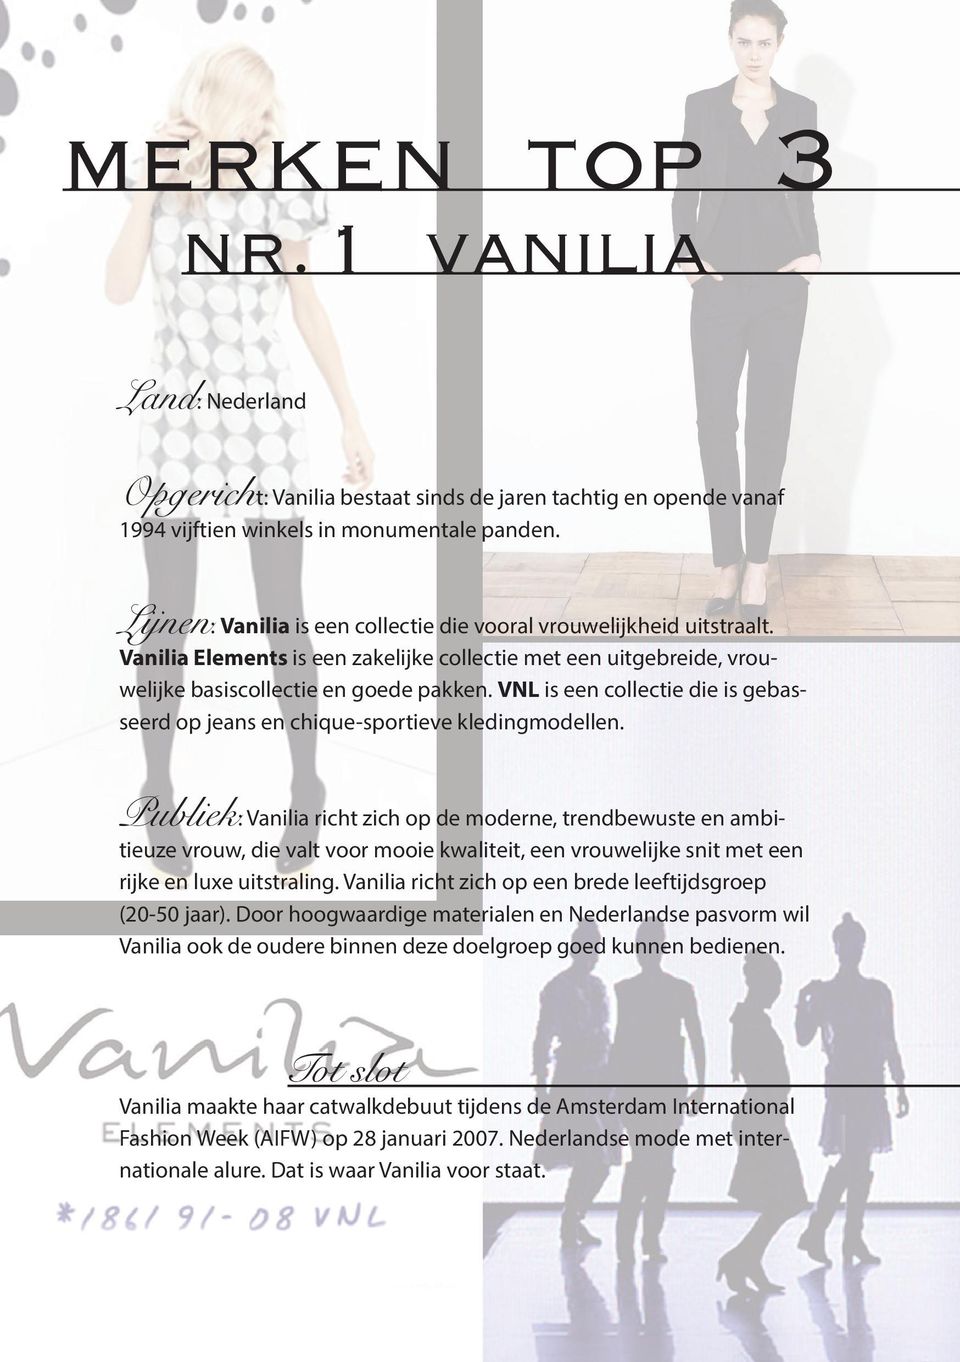 VNL is een collectie die is gebasseerd op jeans en chique-sportieve kledingmodellen.